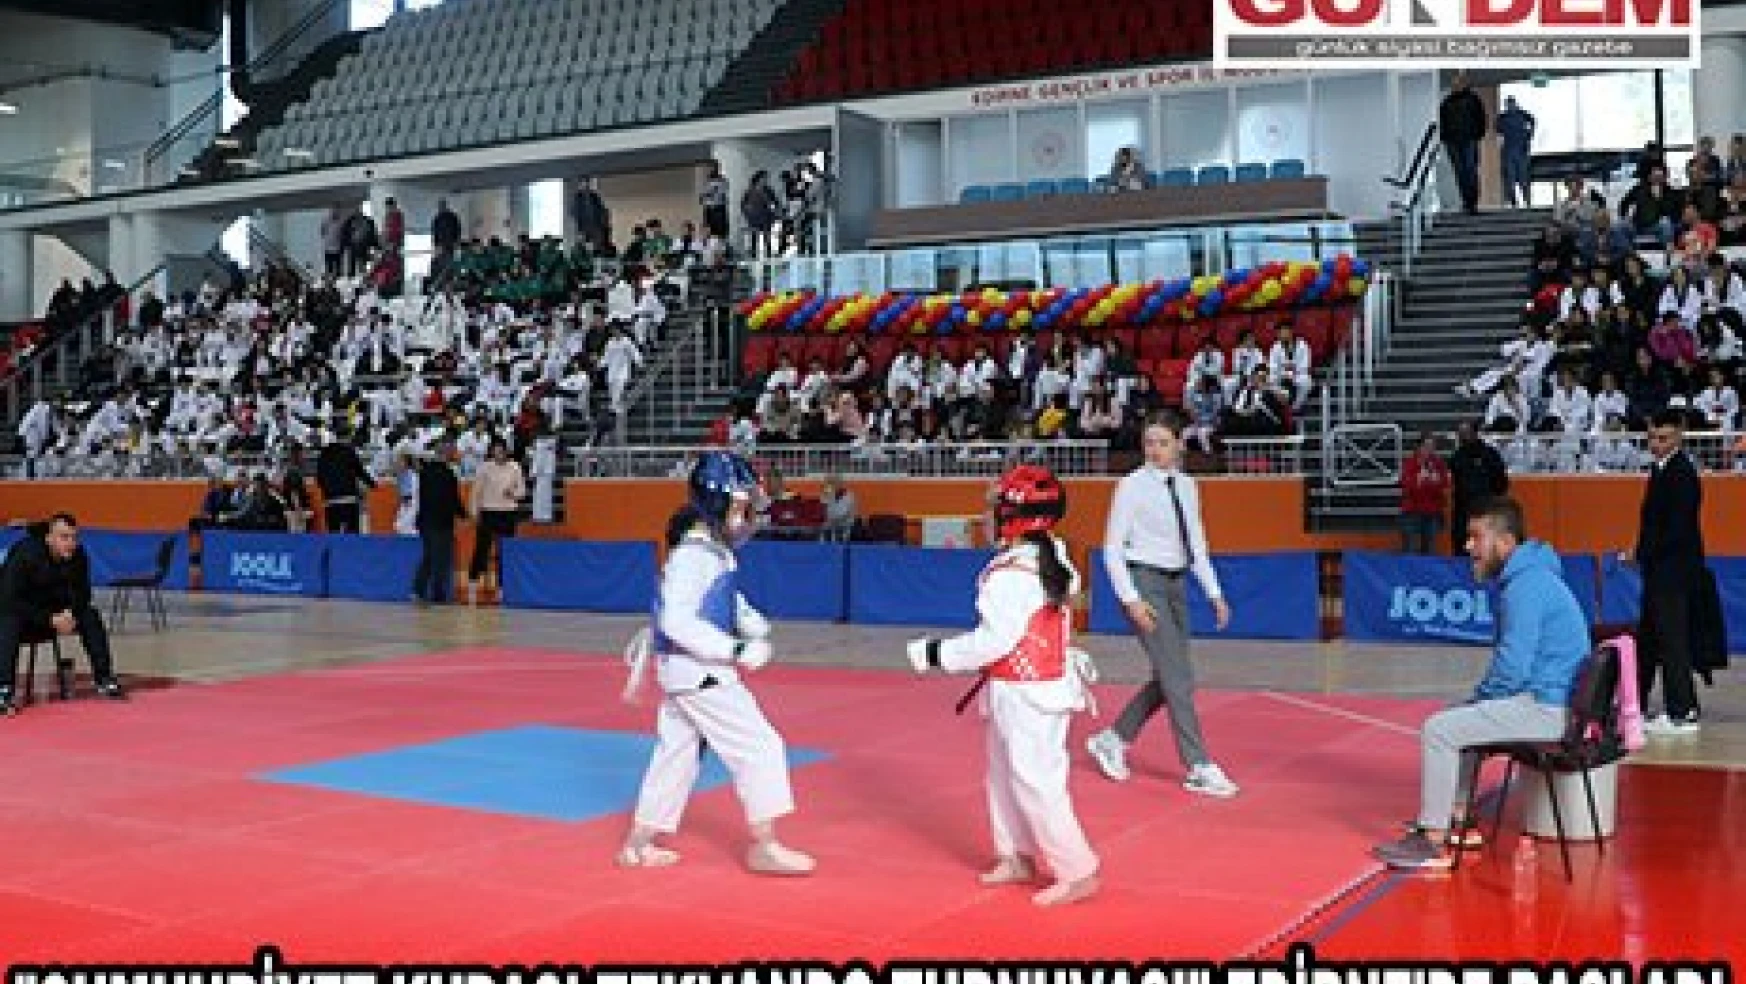 'Cumhuriyet Kupası Tekvando Turnuvası' Edirne'de başladı